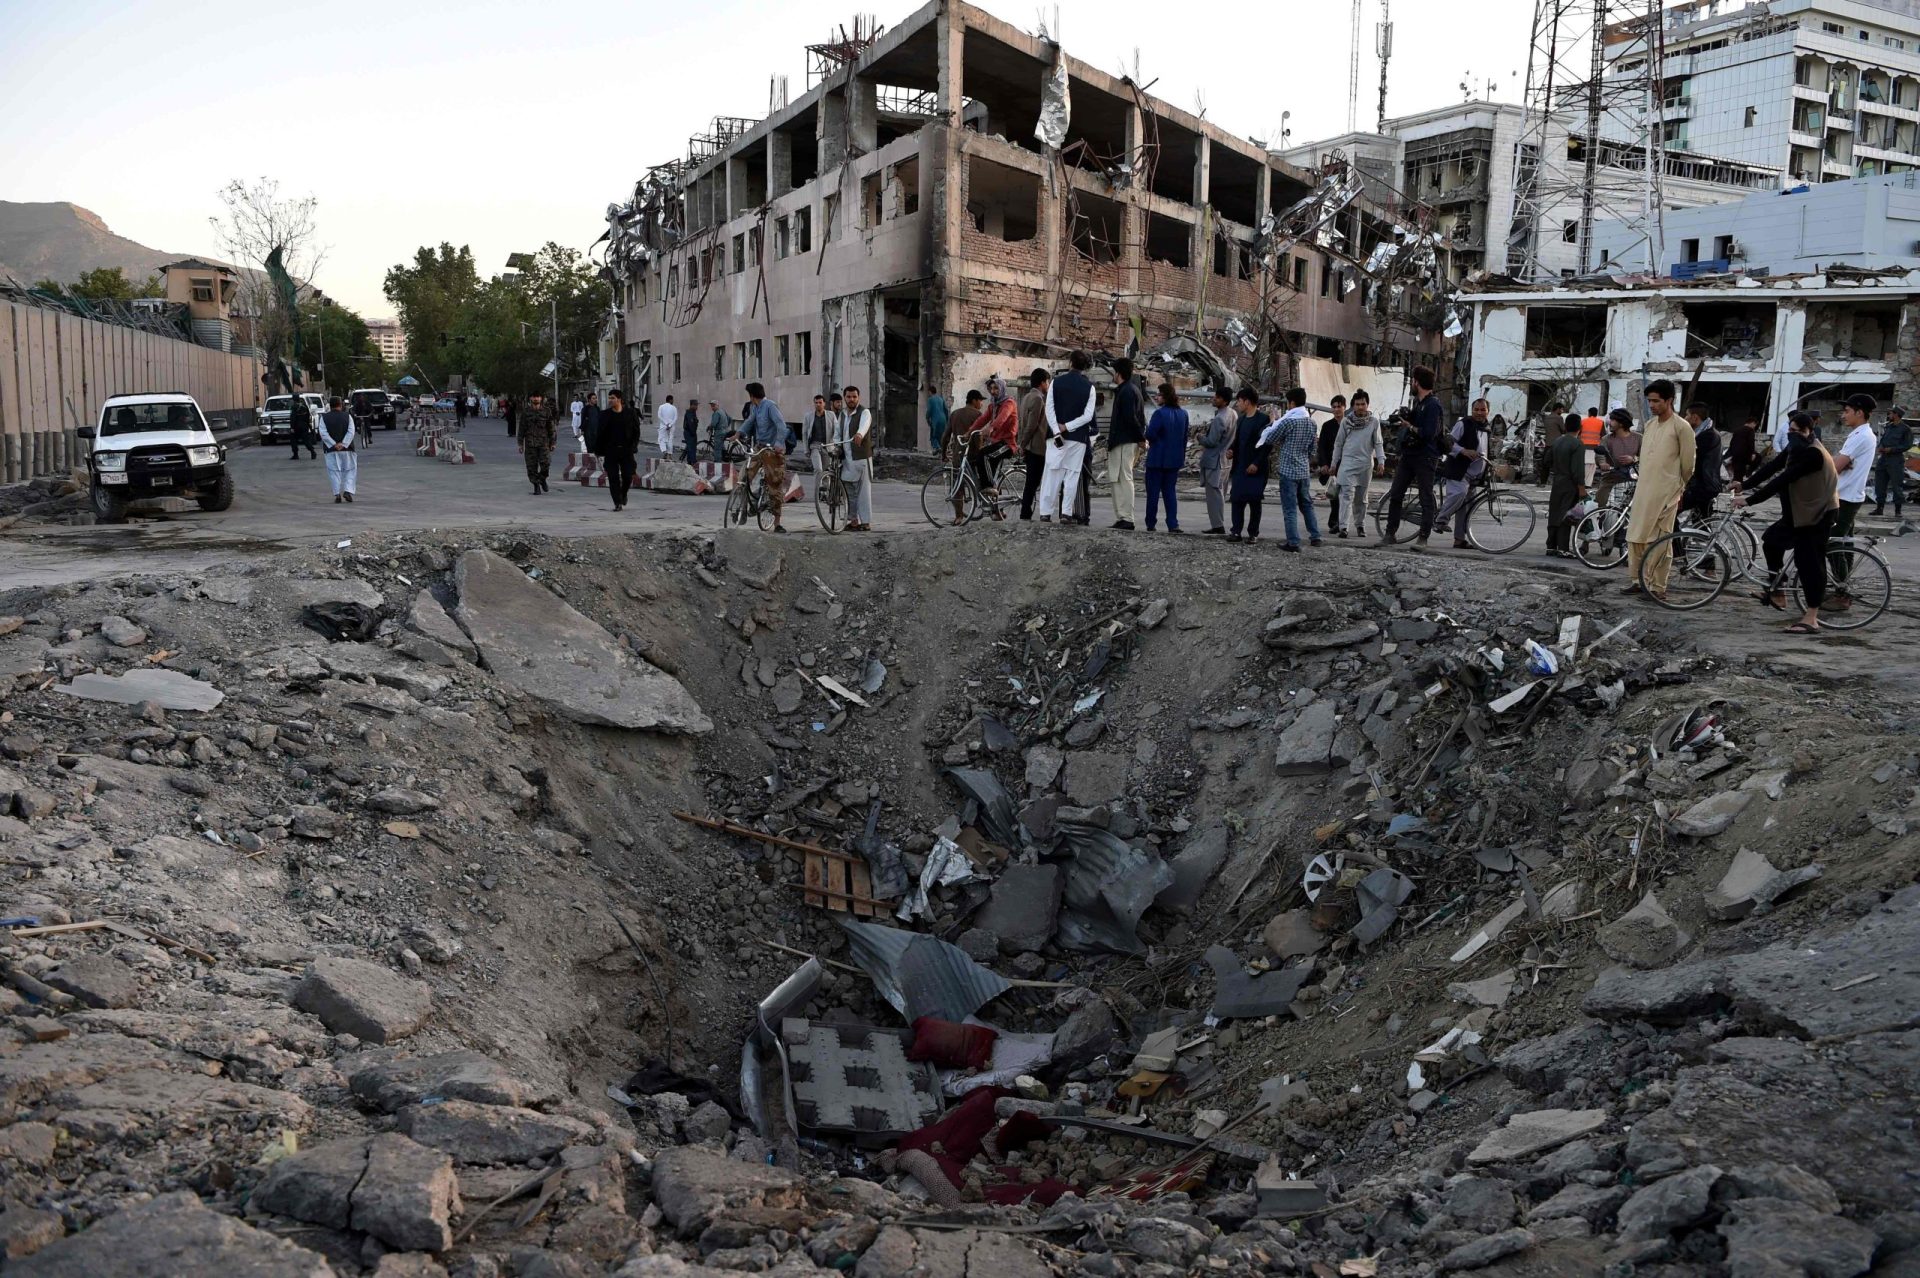 Cabul. Talibãs negam responsabilidade do ataque terrorista